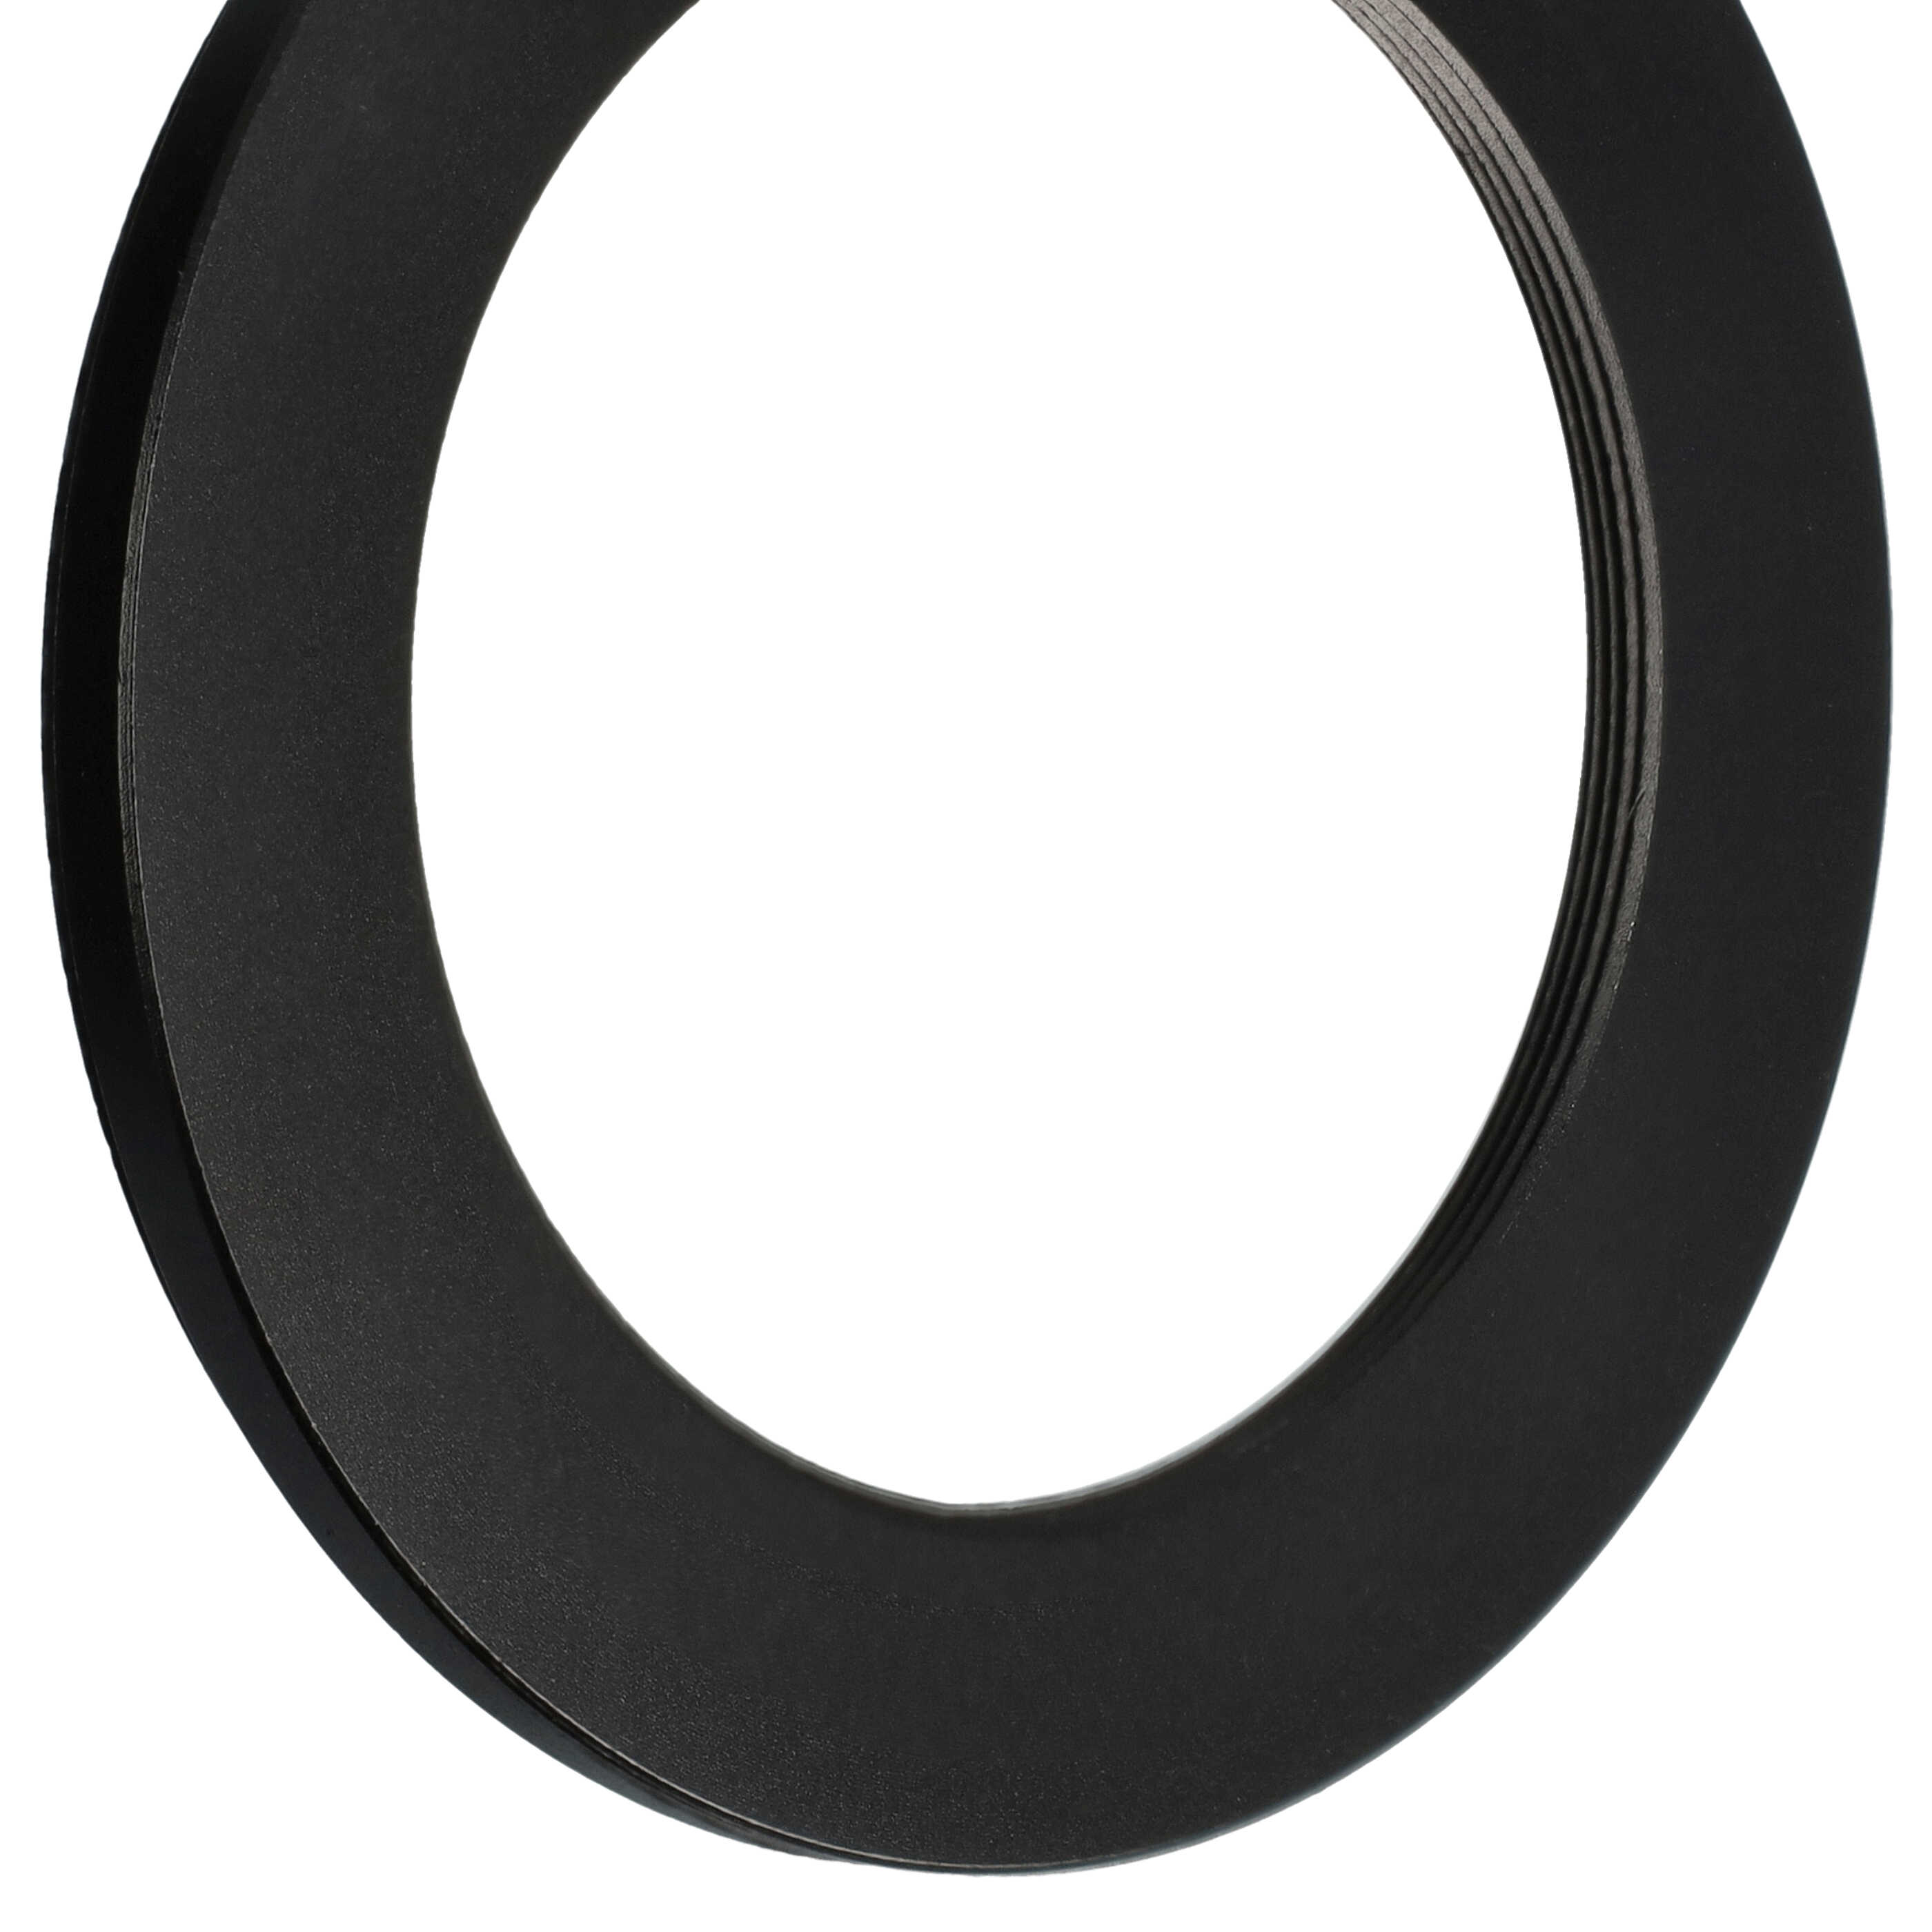 Step-Down-Ring Adapter von 72 mm auf 52 mm für diverse Kamera Objektive